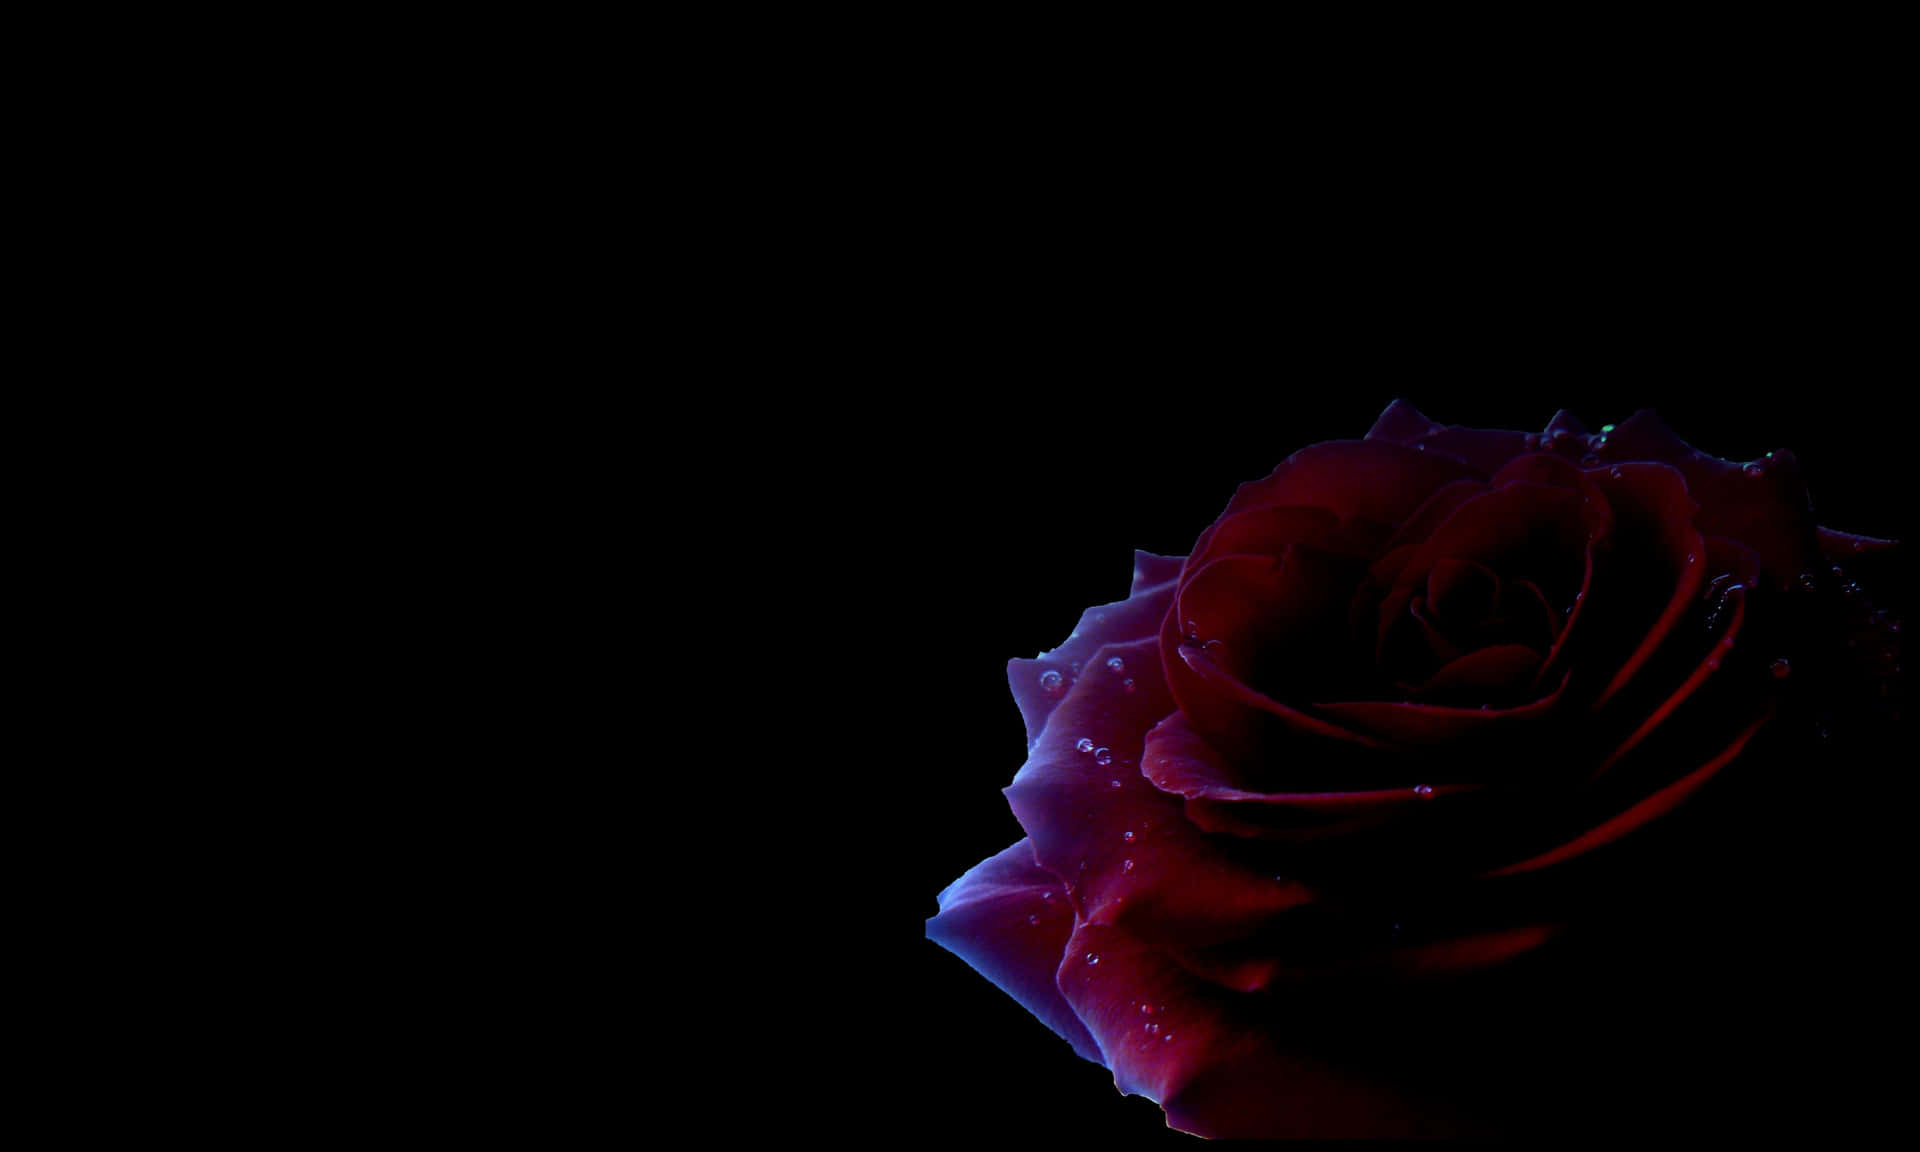 Unasuggestiva Rosa Nera In Tutta La Sua Oscurità, Misteriosa Bellezza. Sfondo